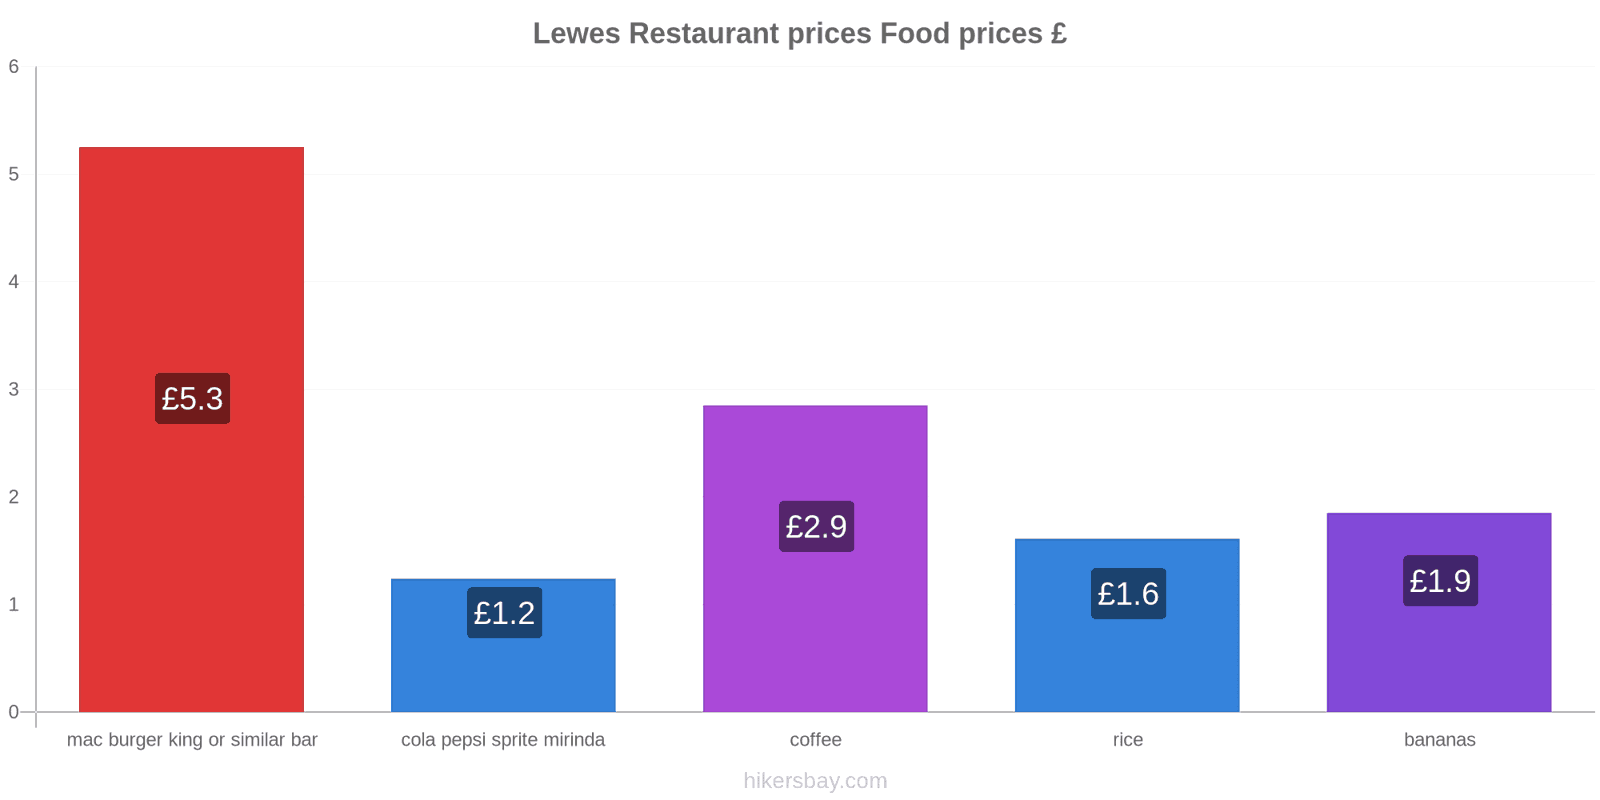 Lewes price changes hikersbay.com